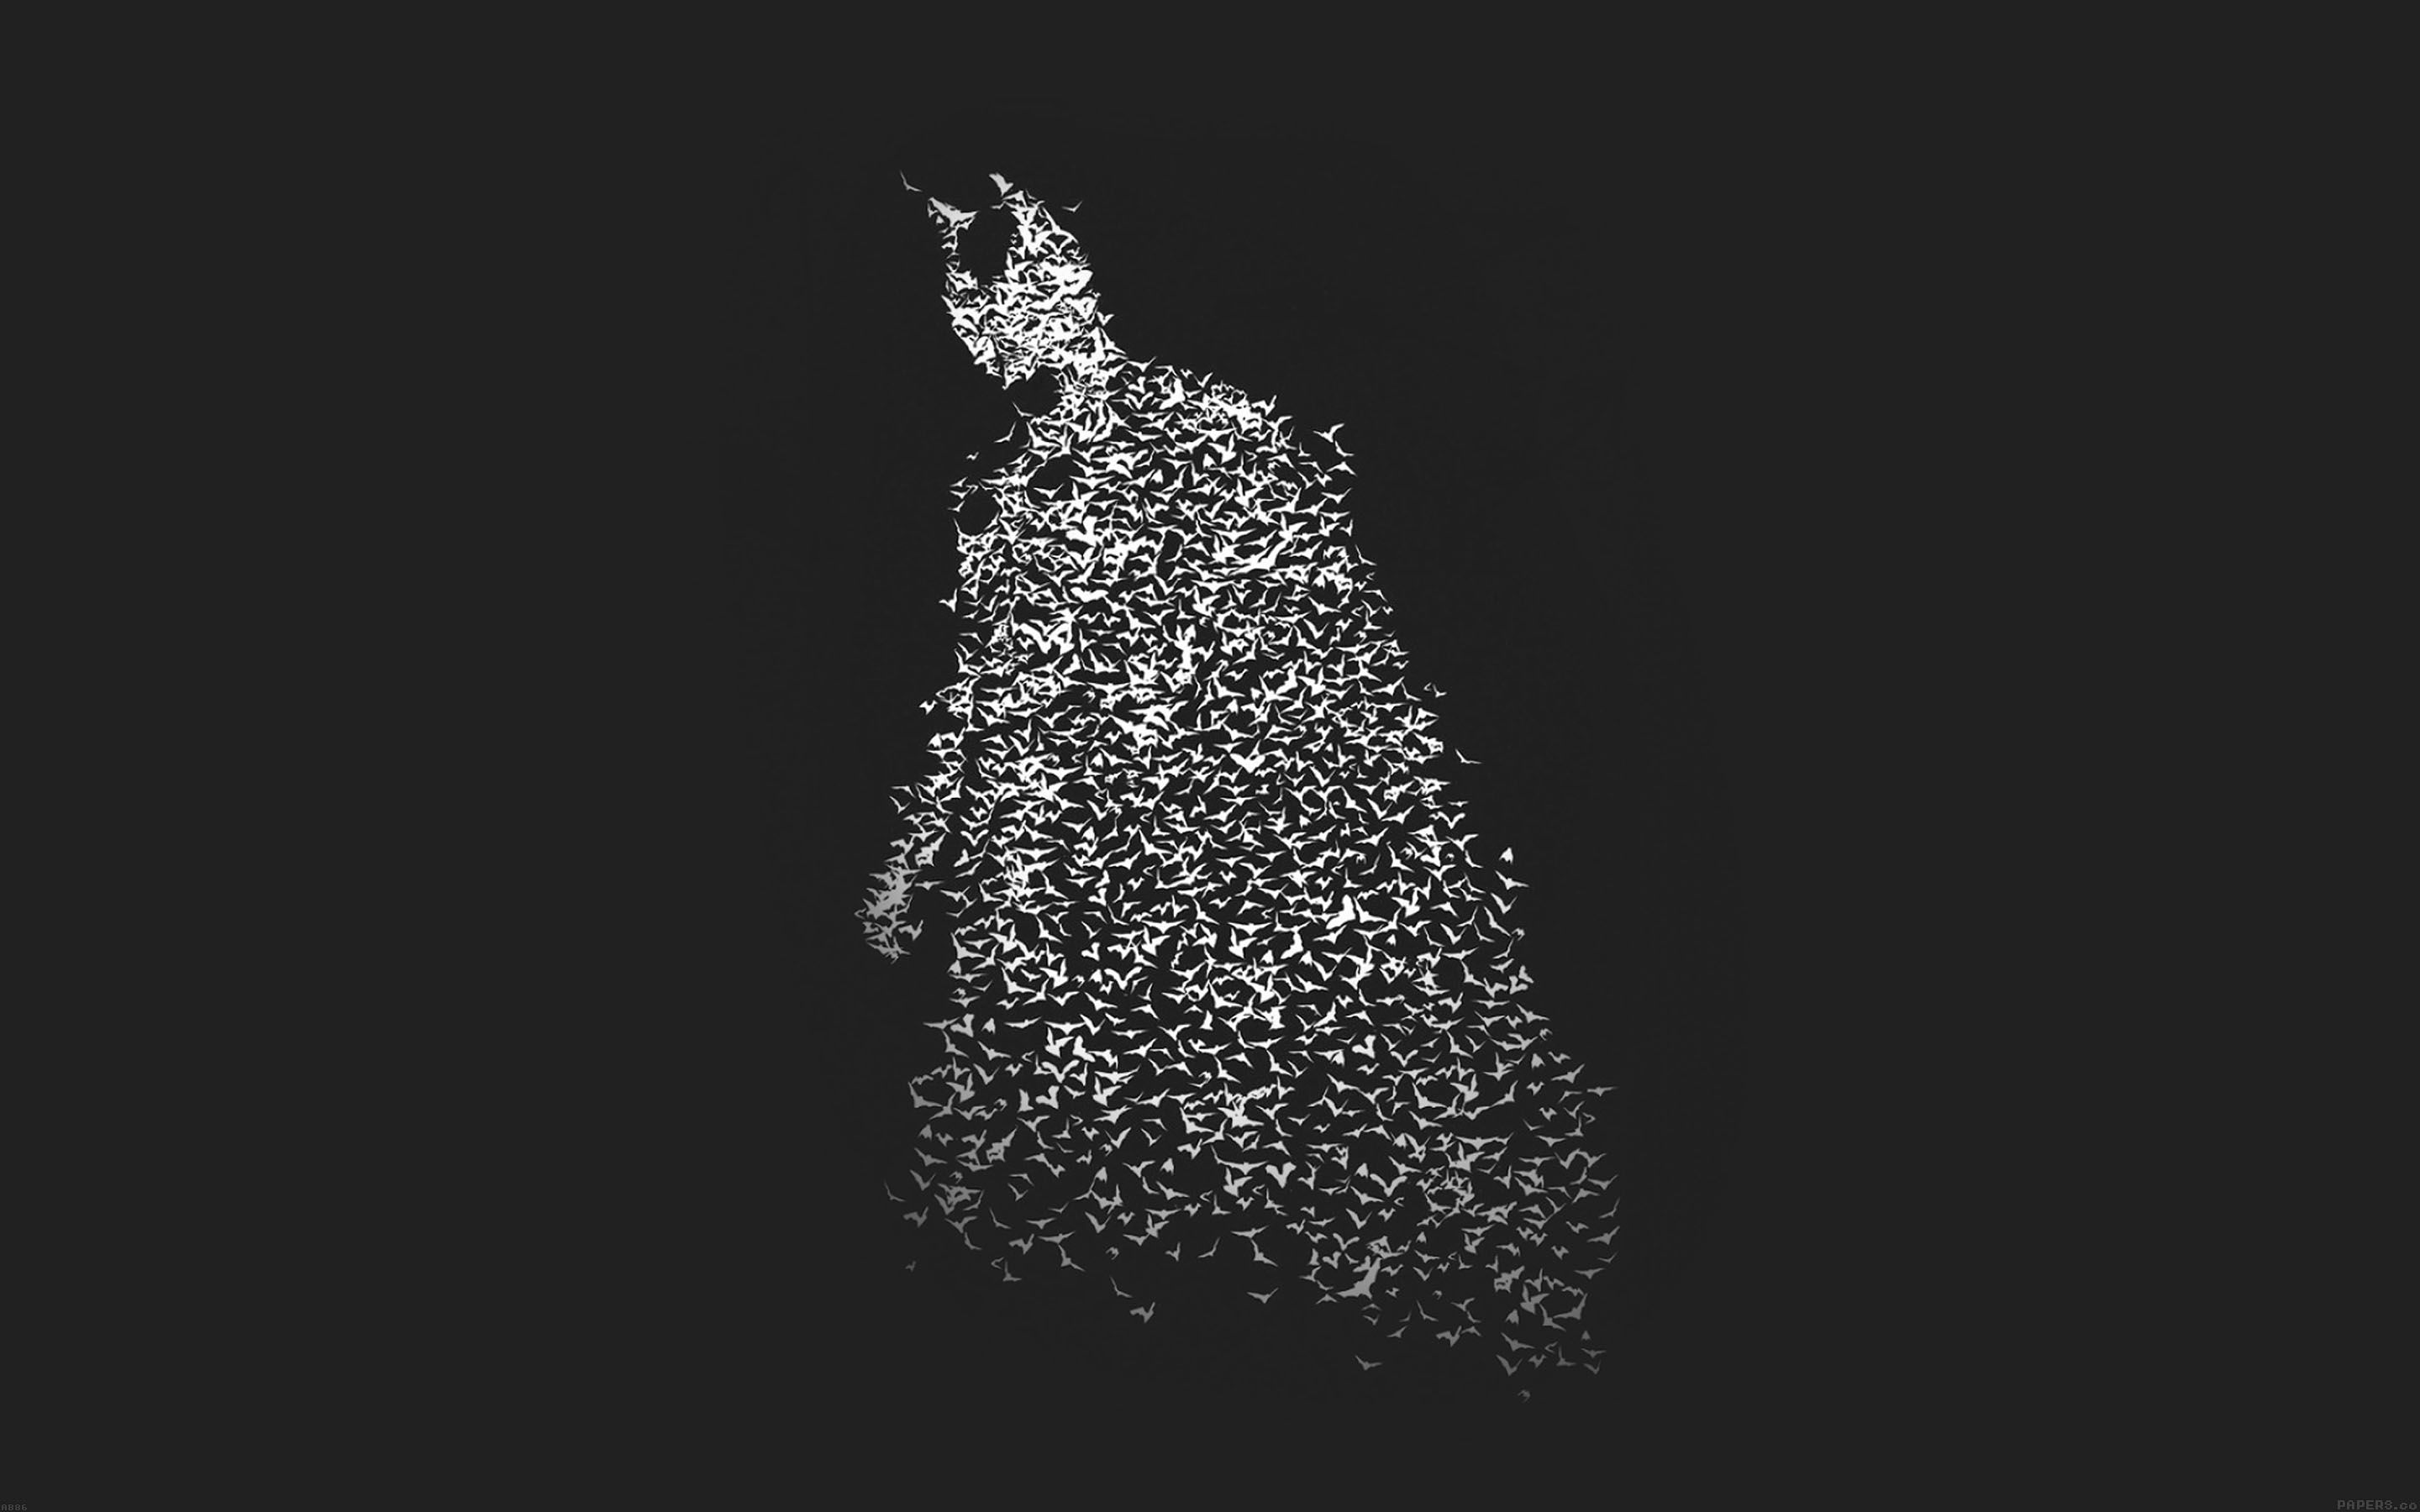 IMAGE | macbook pro retina wallpaper batman